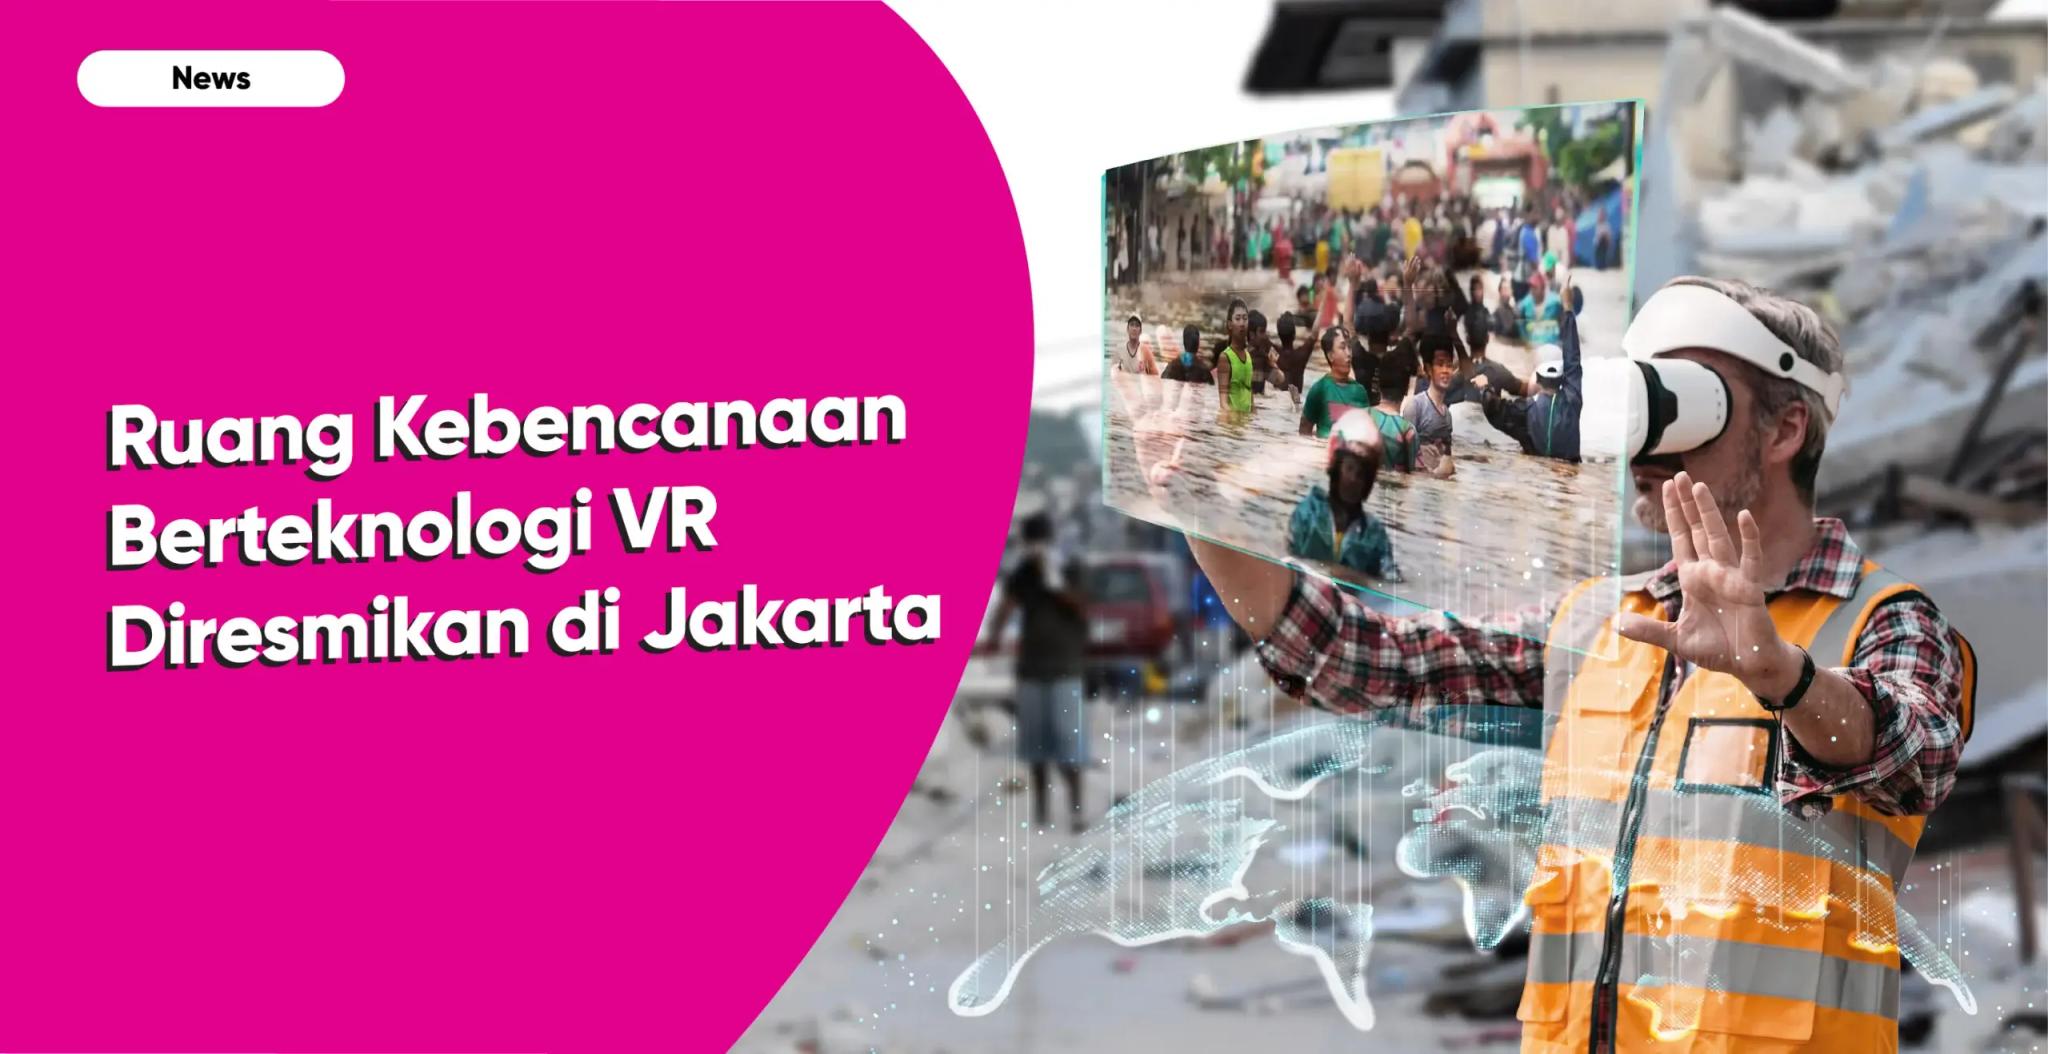 Pemprov DKI Jakarta Meresmikan Ruang KIE Kebencanaan Pertama Berteknologi Virtual Reality